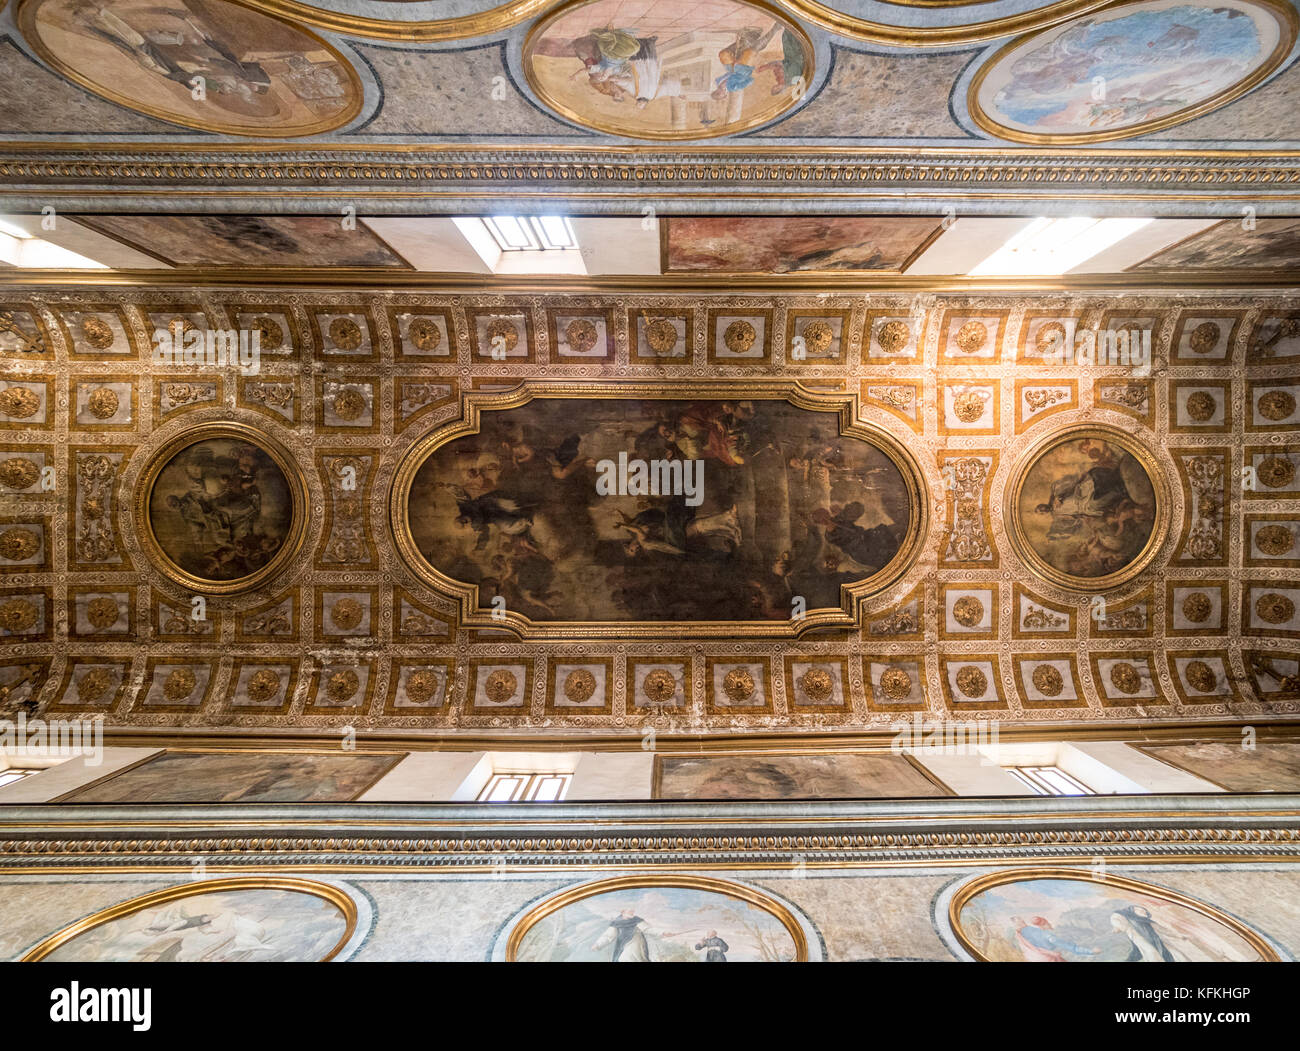 Interior  ceiling of Basilica Sant' Antonino, Sorrento, Italy. Italian church. Stock Photo